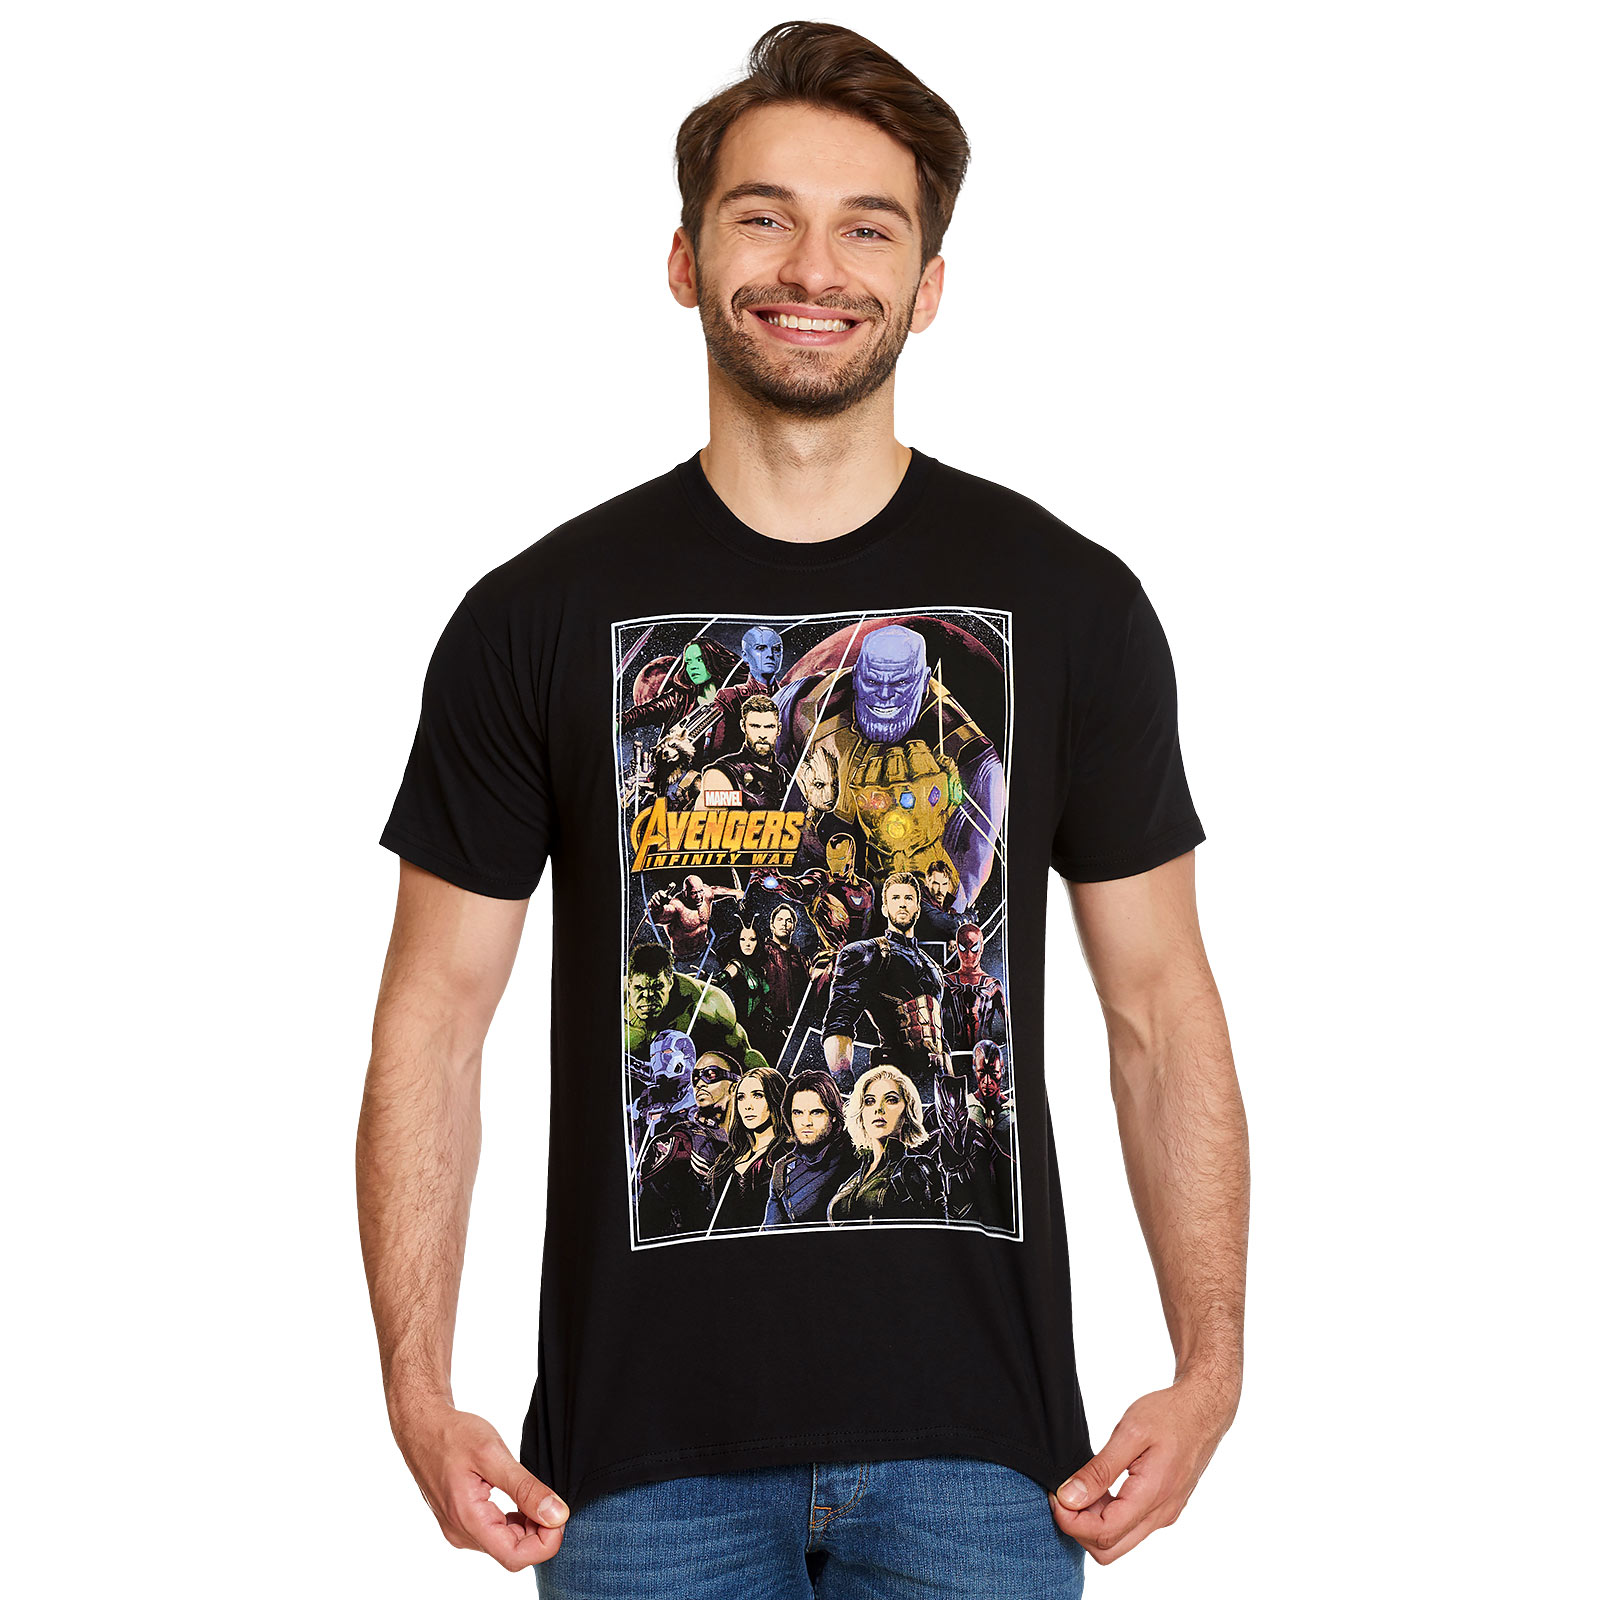 Avengers - T-shirt noir Infinity War Poster Collage